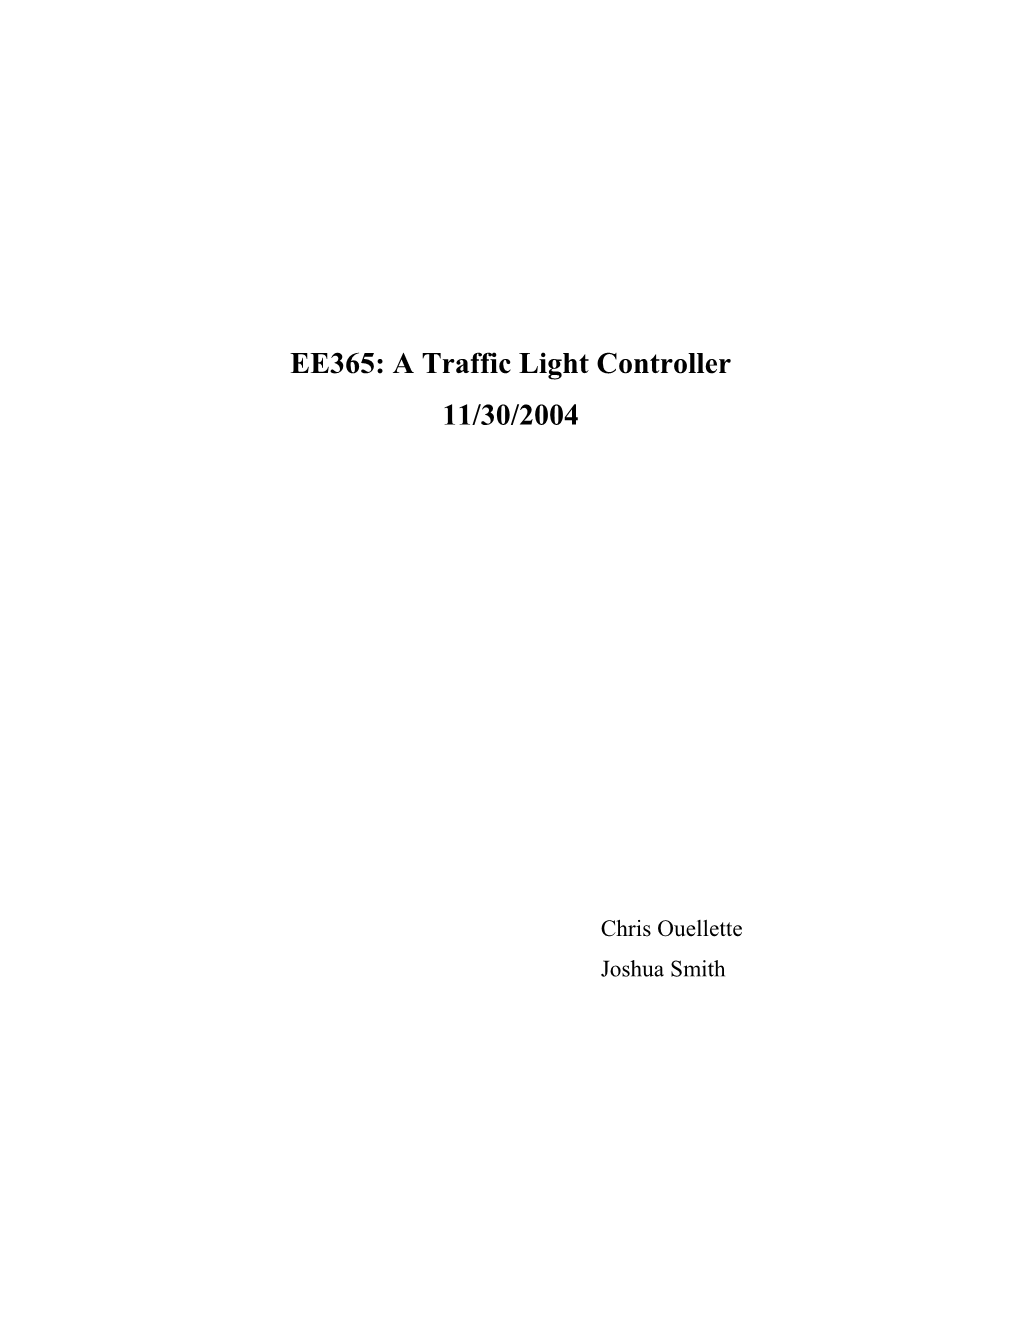 EE365: a Traffic Light Controller